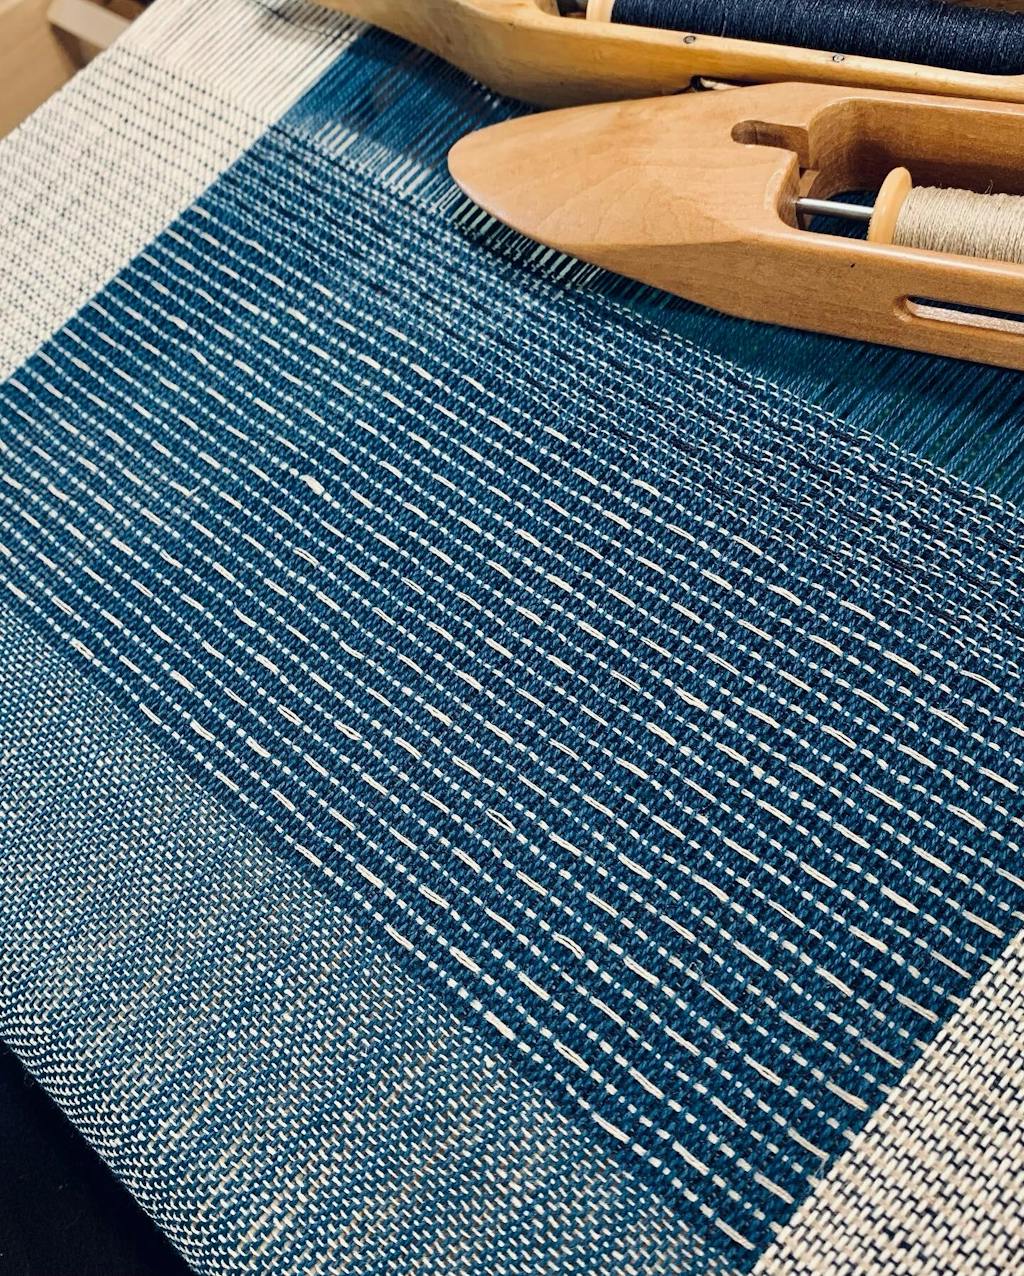 Droppdräll Towel Weaving Pattern - Gist Yarn